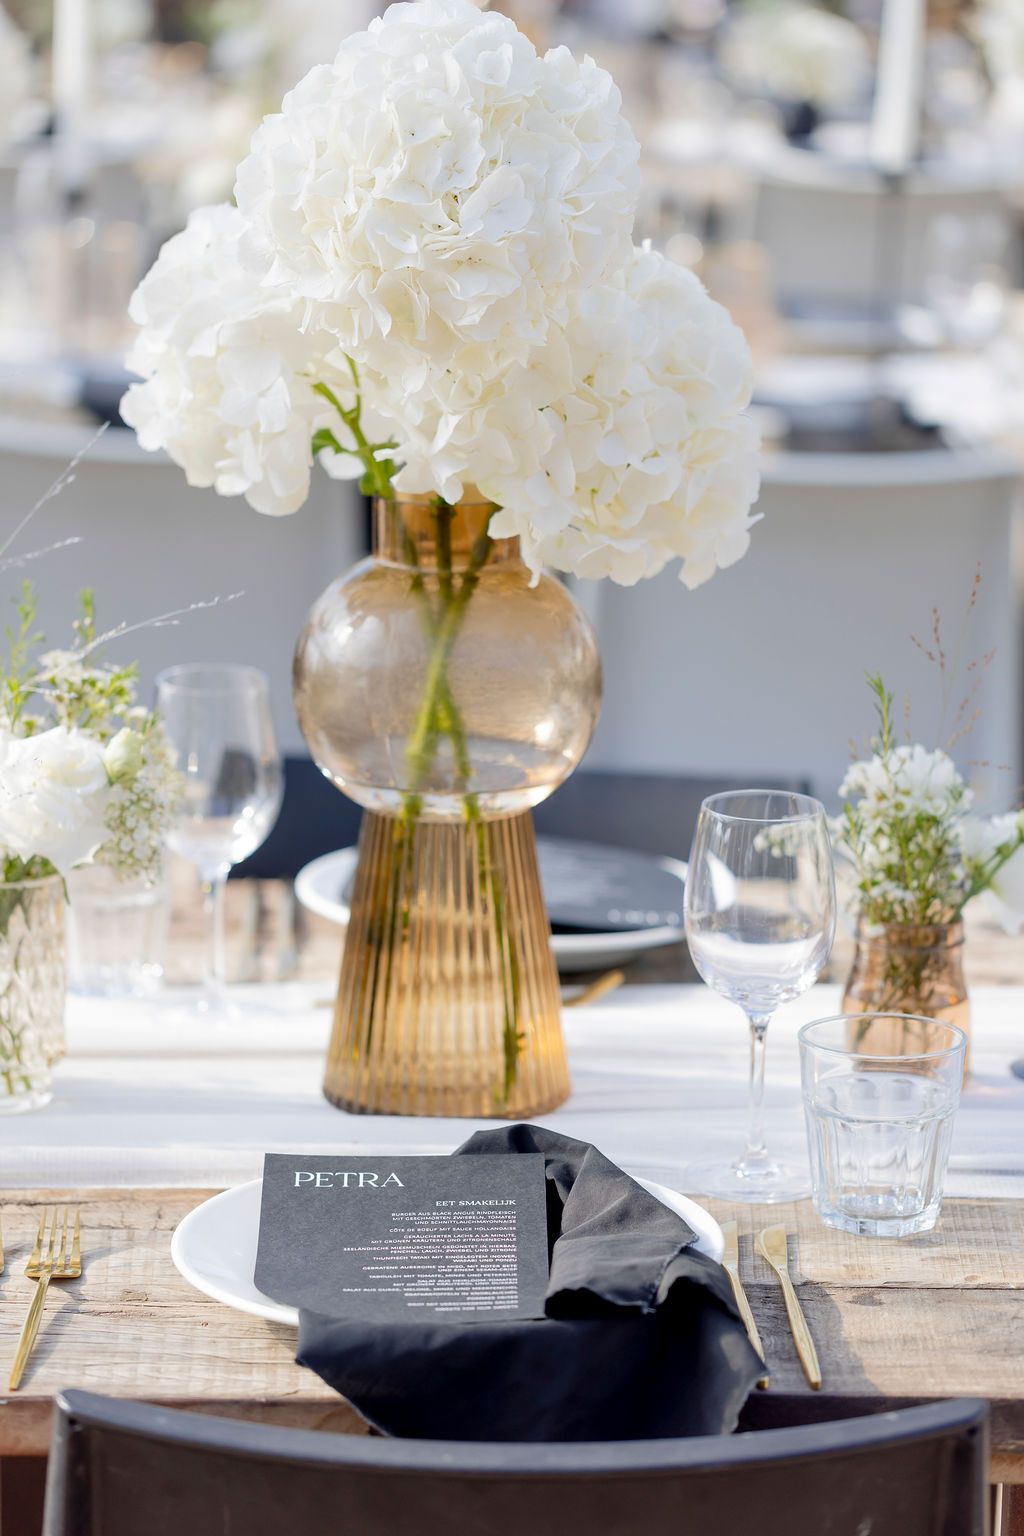 Hochzeits-Tischdeko mit goldener Vase in stylischem Design und weißen Hortensien | Hochzeitsplanung: Sagt Ja